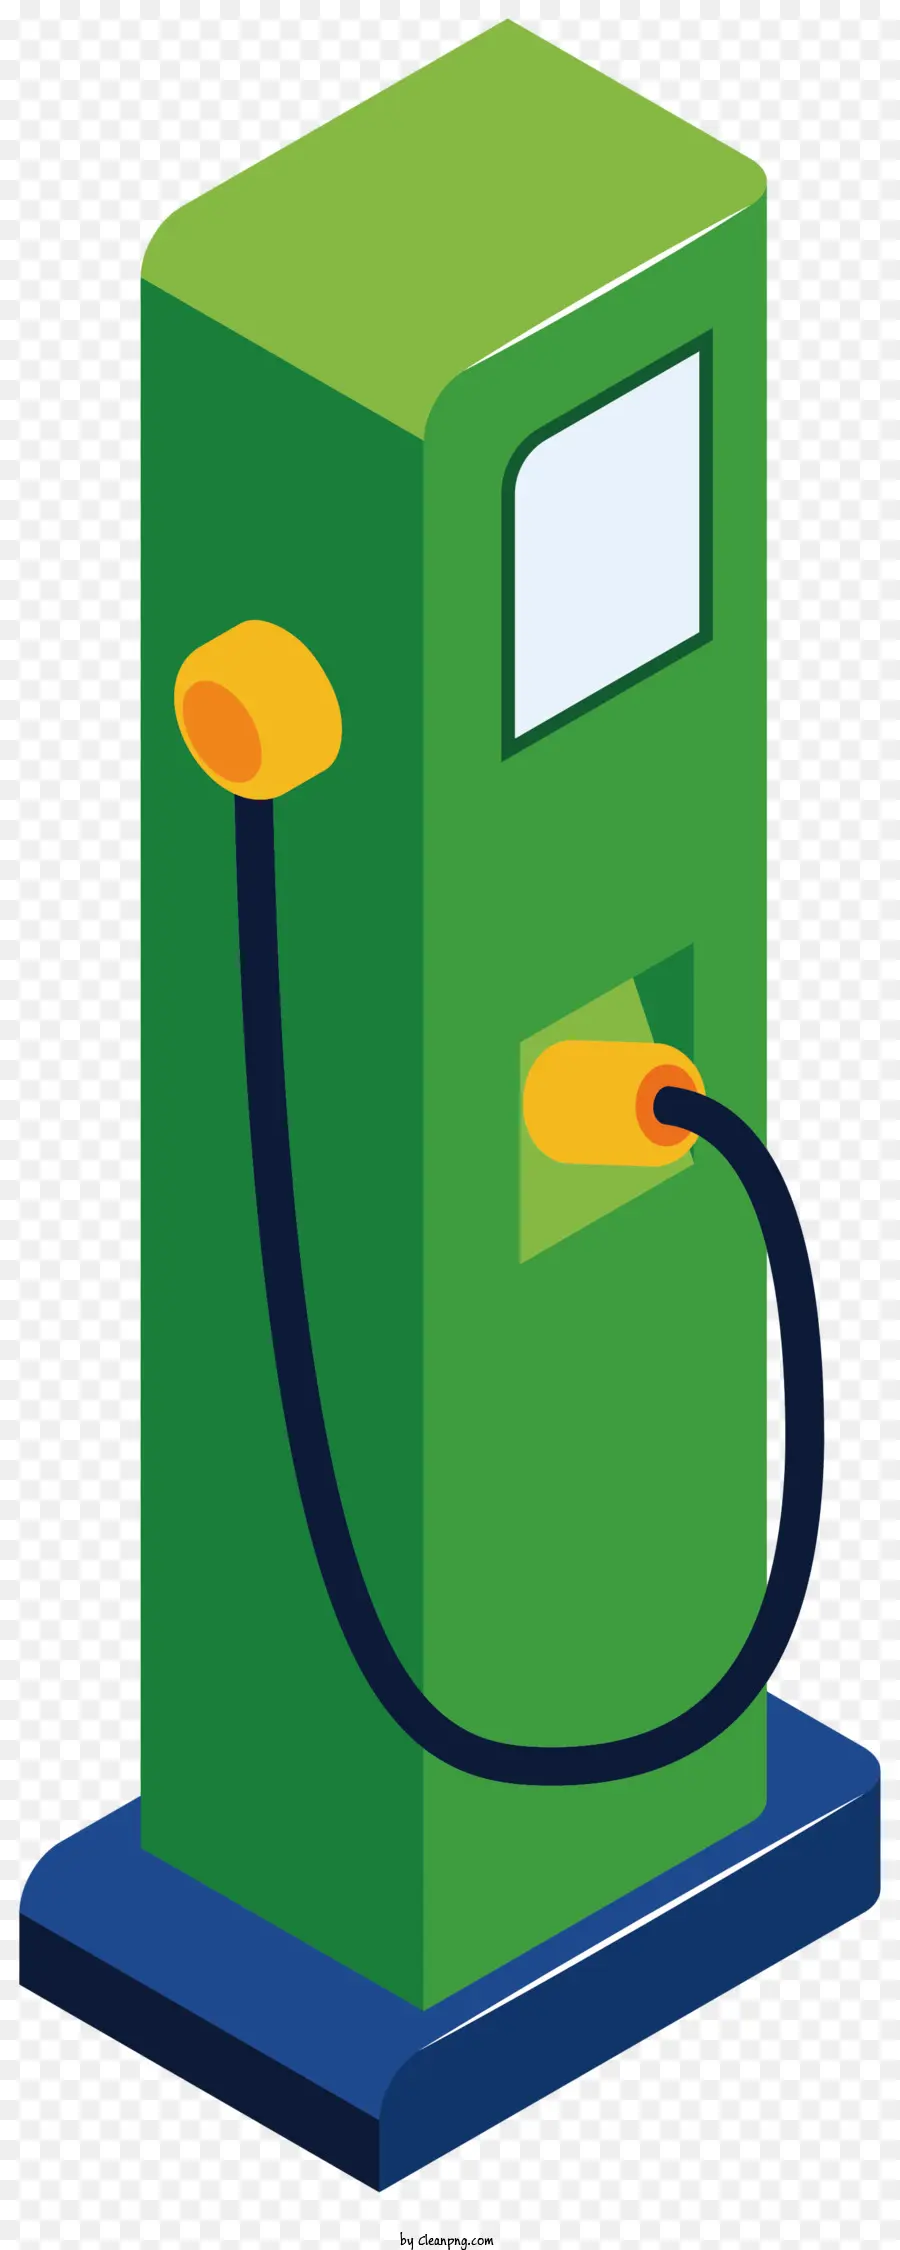 Bơm khí xanh bơm khí mở đầu ống khí kết nối với bơm khí dây điện màu vàng - Hình ảnh rõ ràng, đơn giản của bơm khí xanh